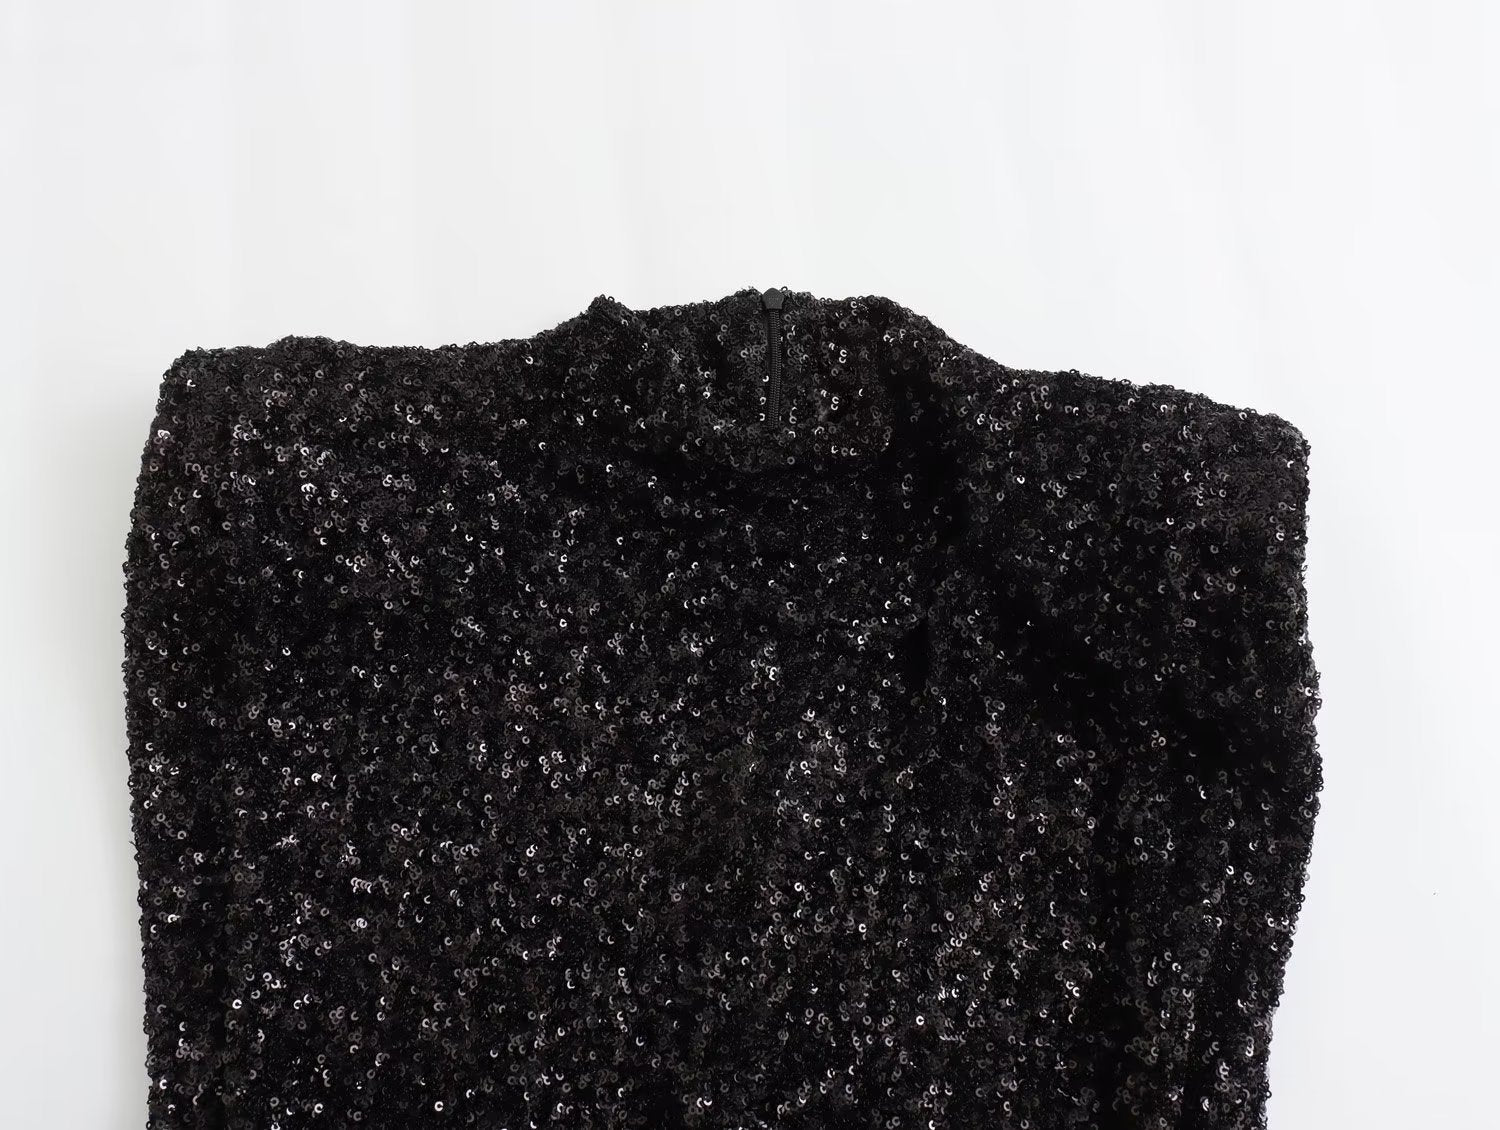 Black Sequined Padded Shoulder Mini Dress